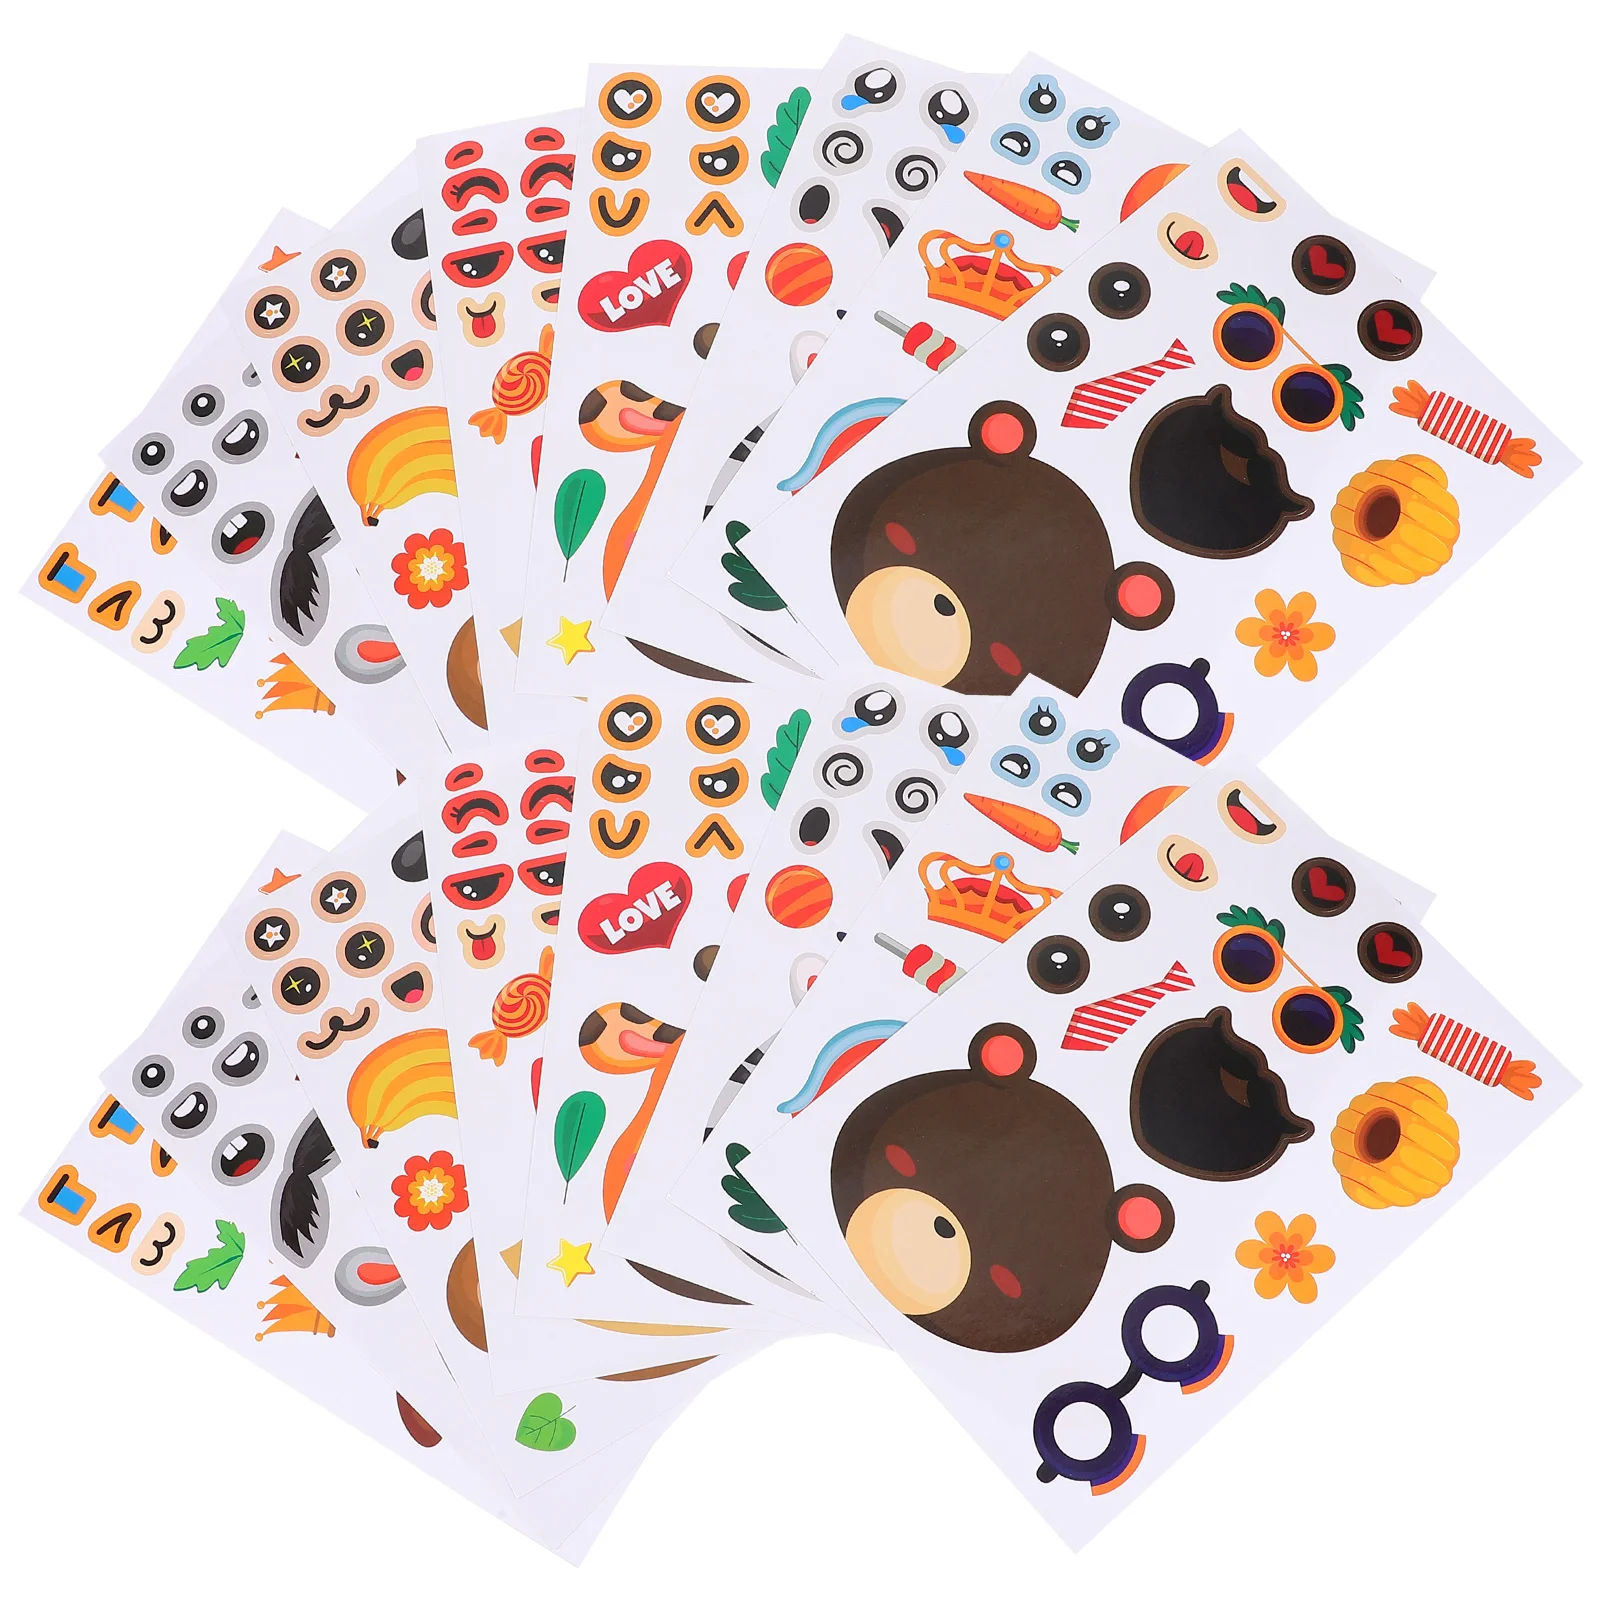 

24 Sheets Decorative Reward Stickers Children Encouragement Decals Gift Sealing Sticker